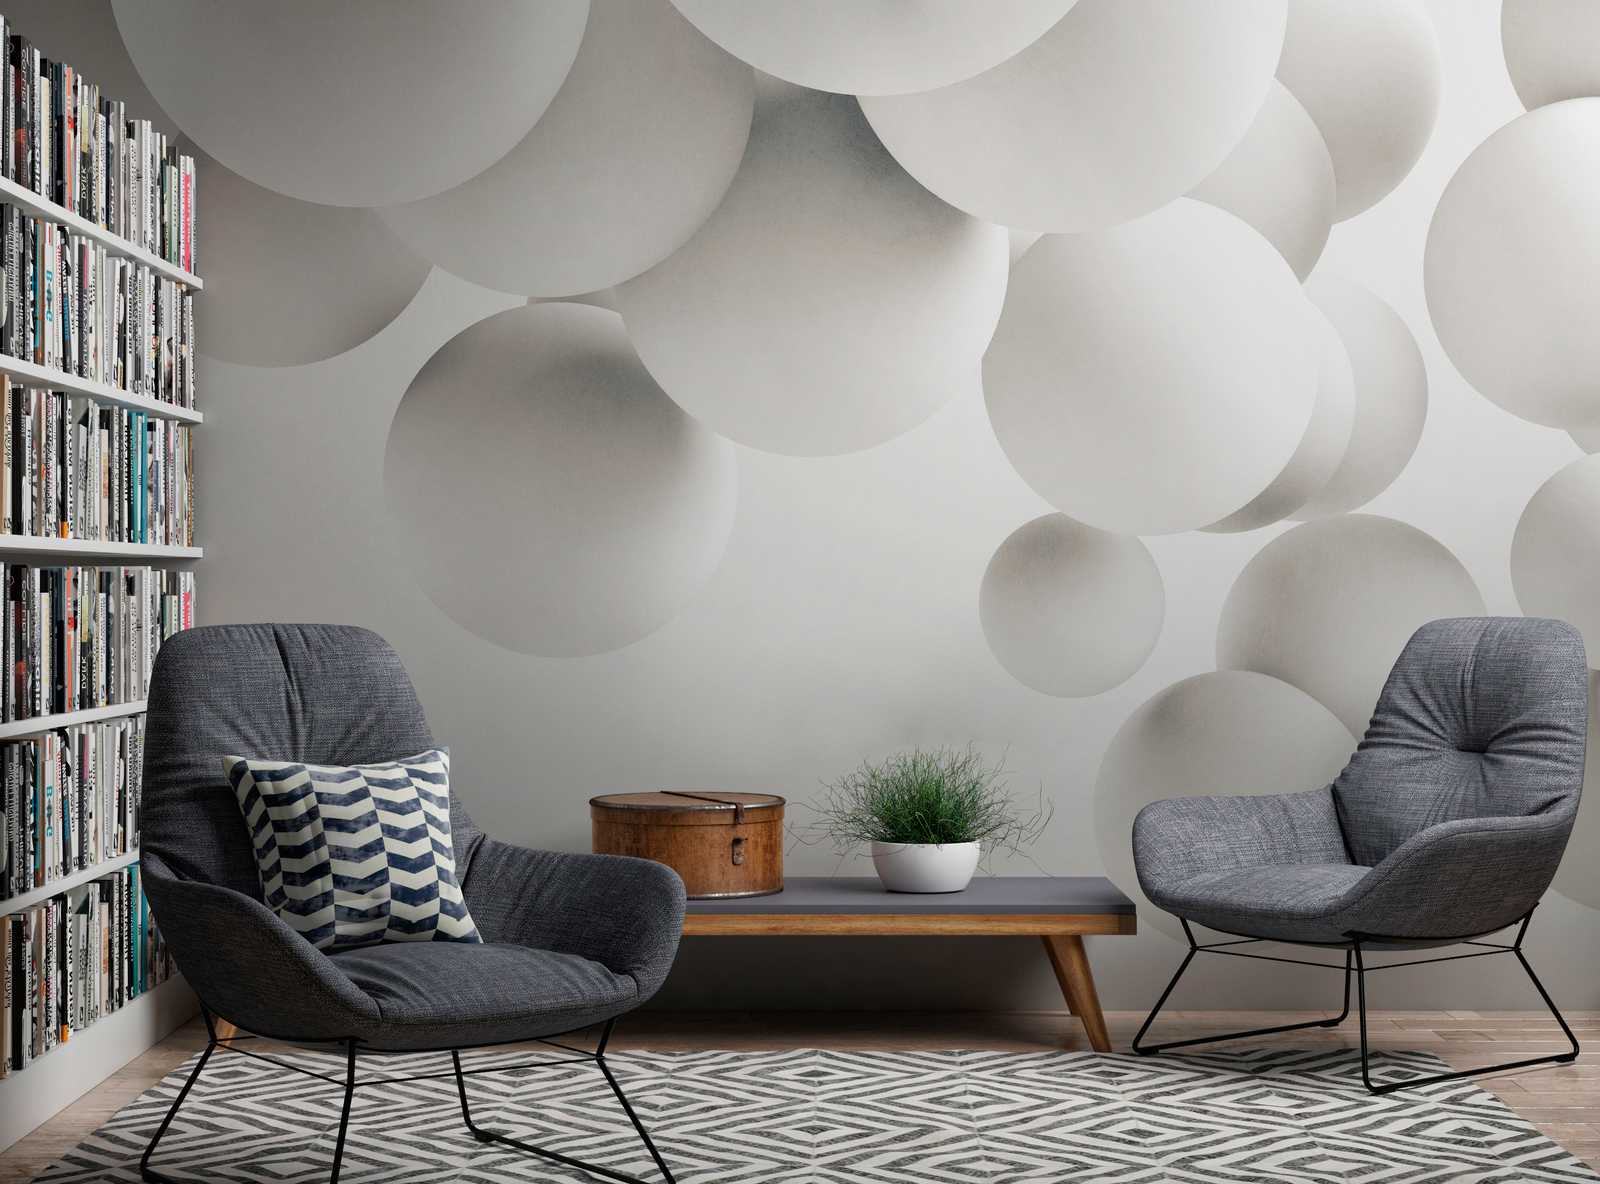             Wallpaper novelty | 3D motif wallpaper white balls
        